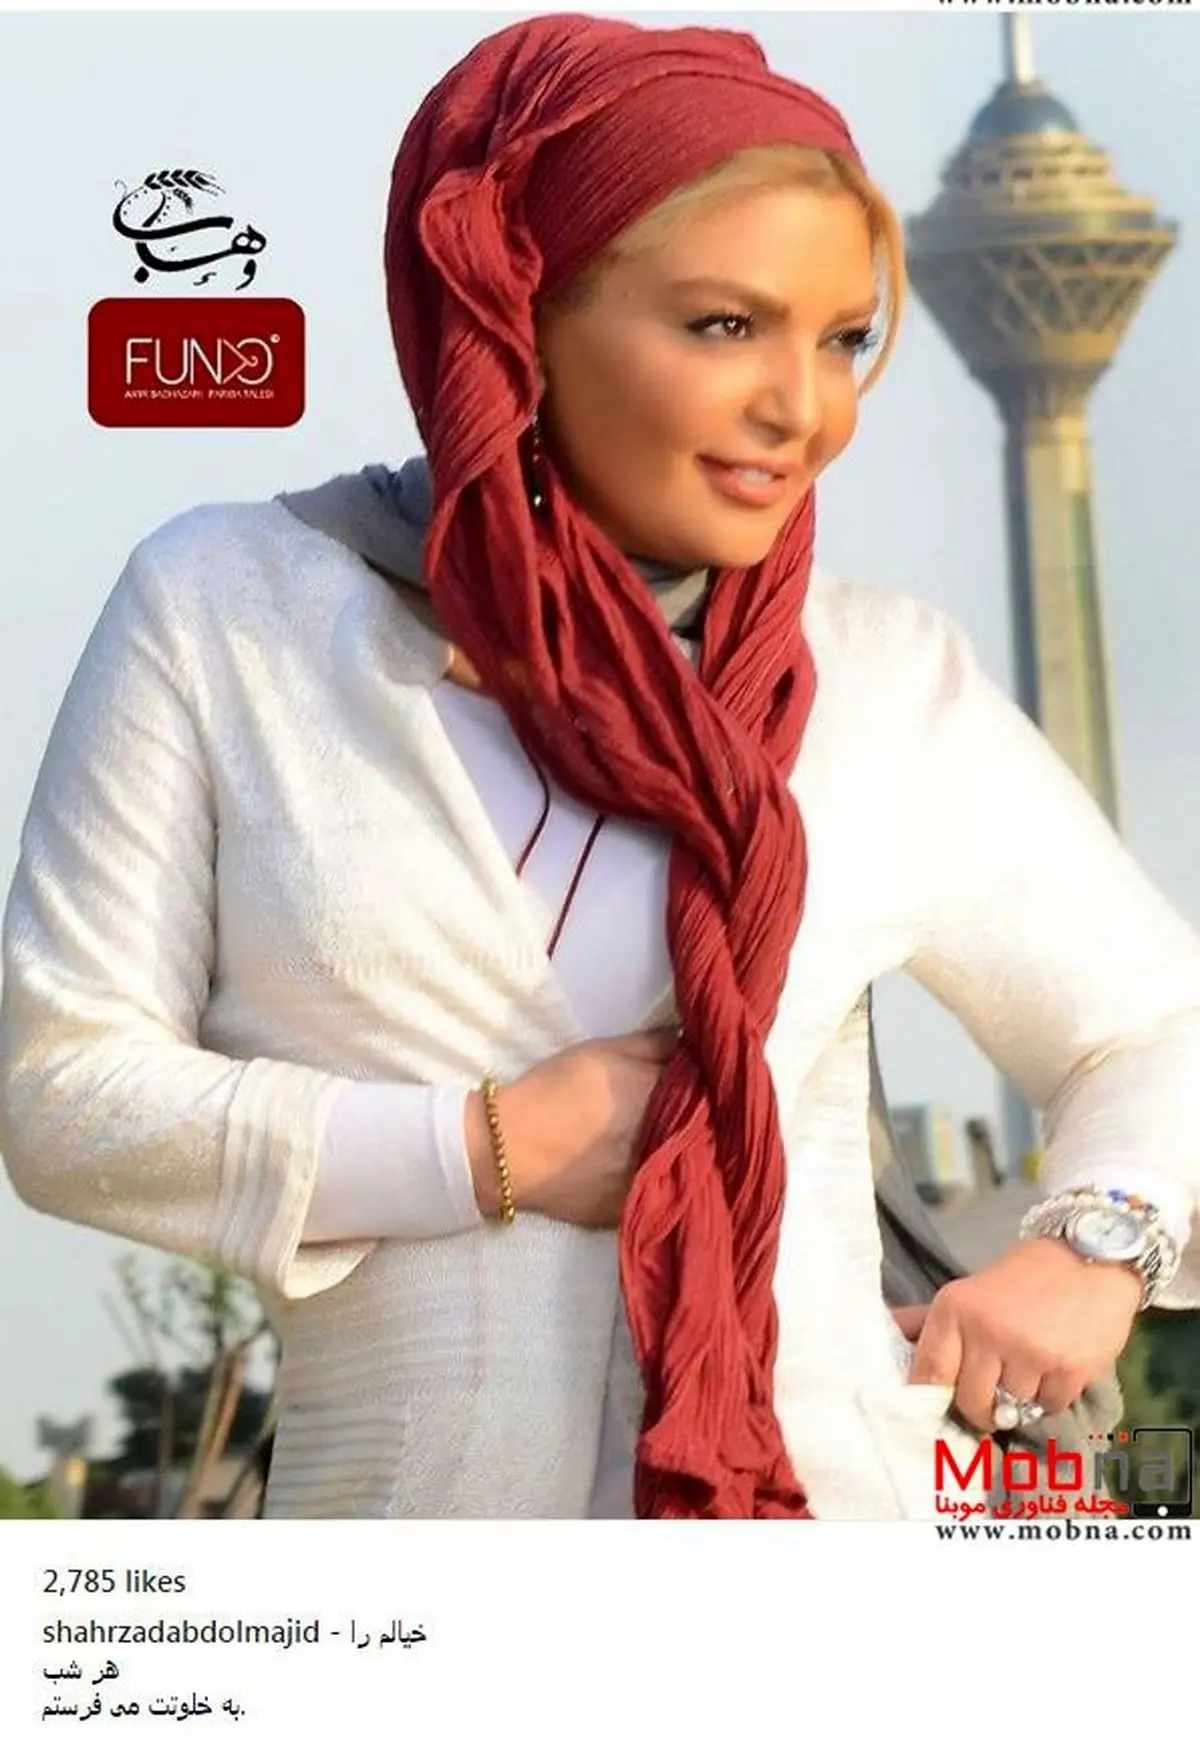 پوشش مدلینگ شهرزاد عبدالمجید در کنار برج میلاد (عکس)